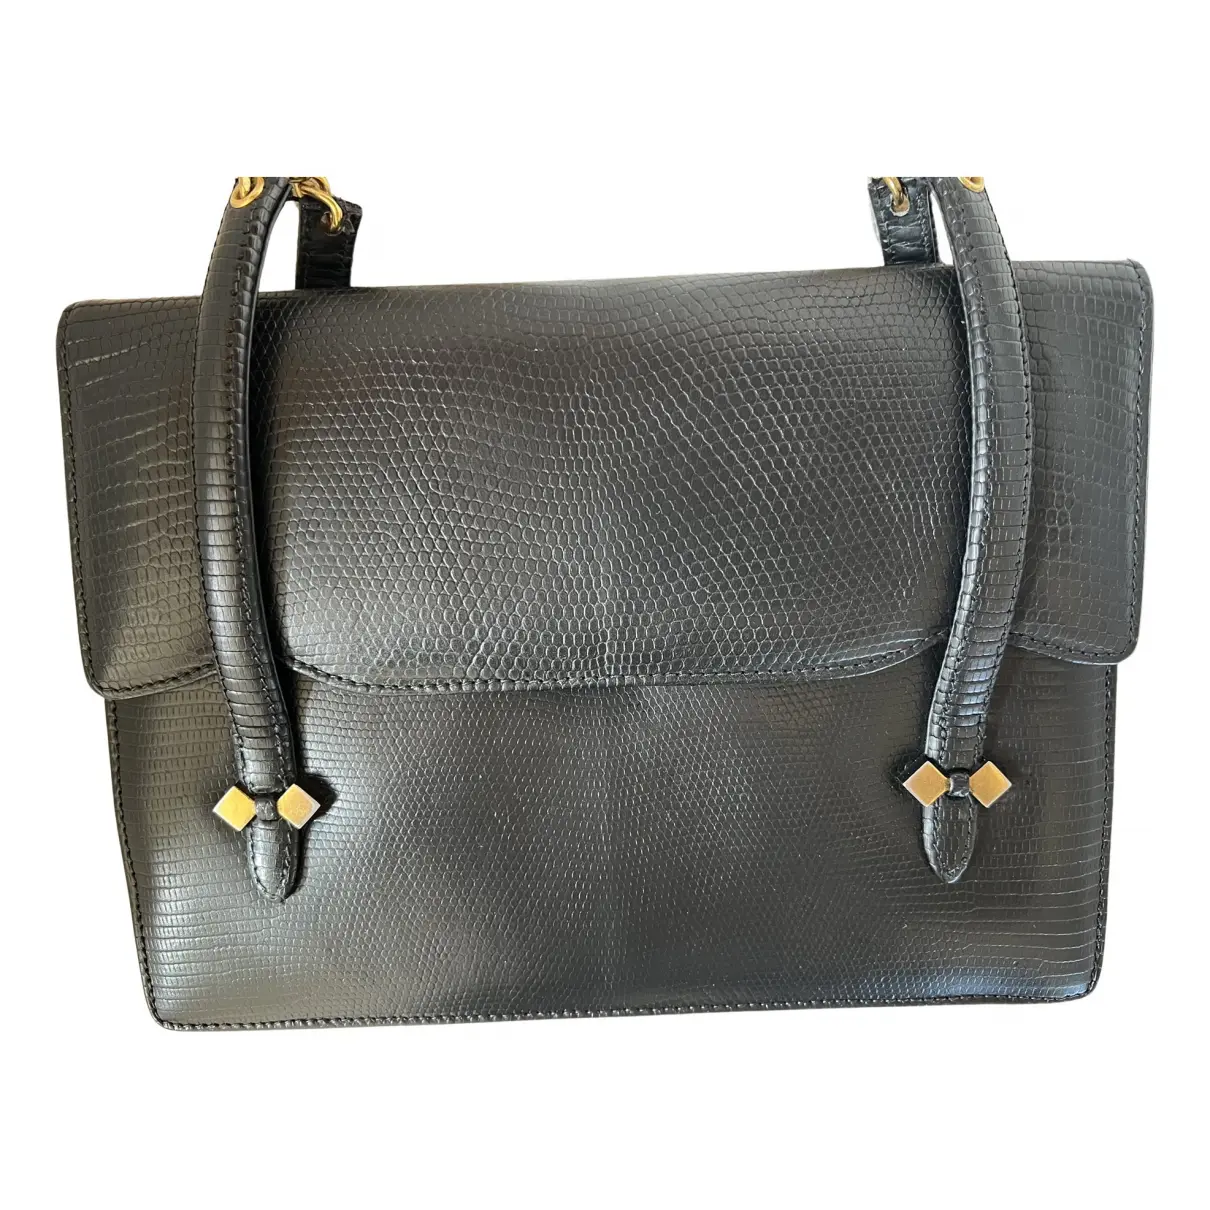 Lizard handbag Gucci - Vintage